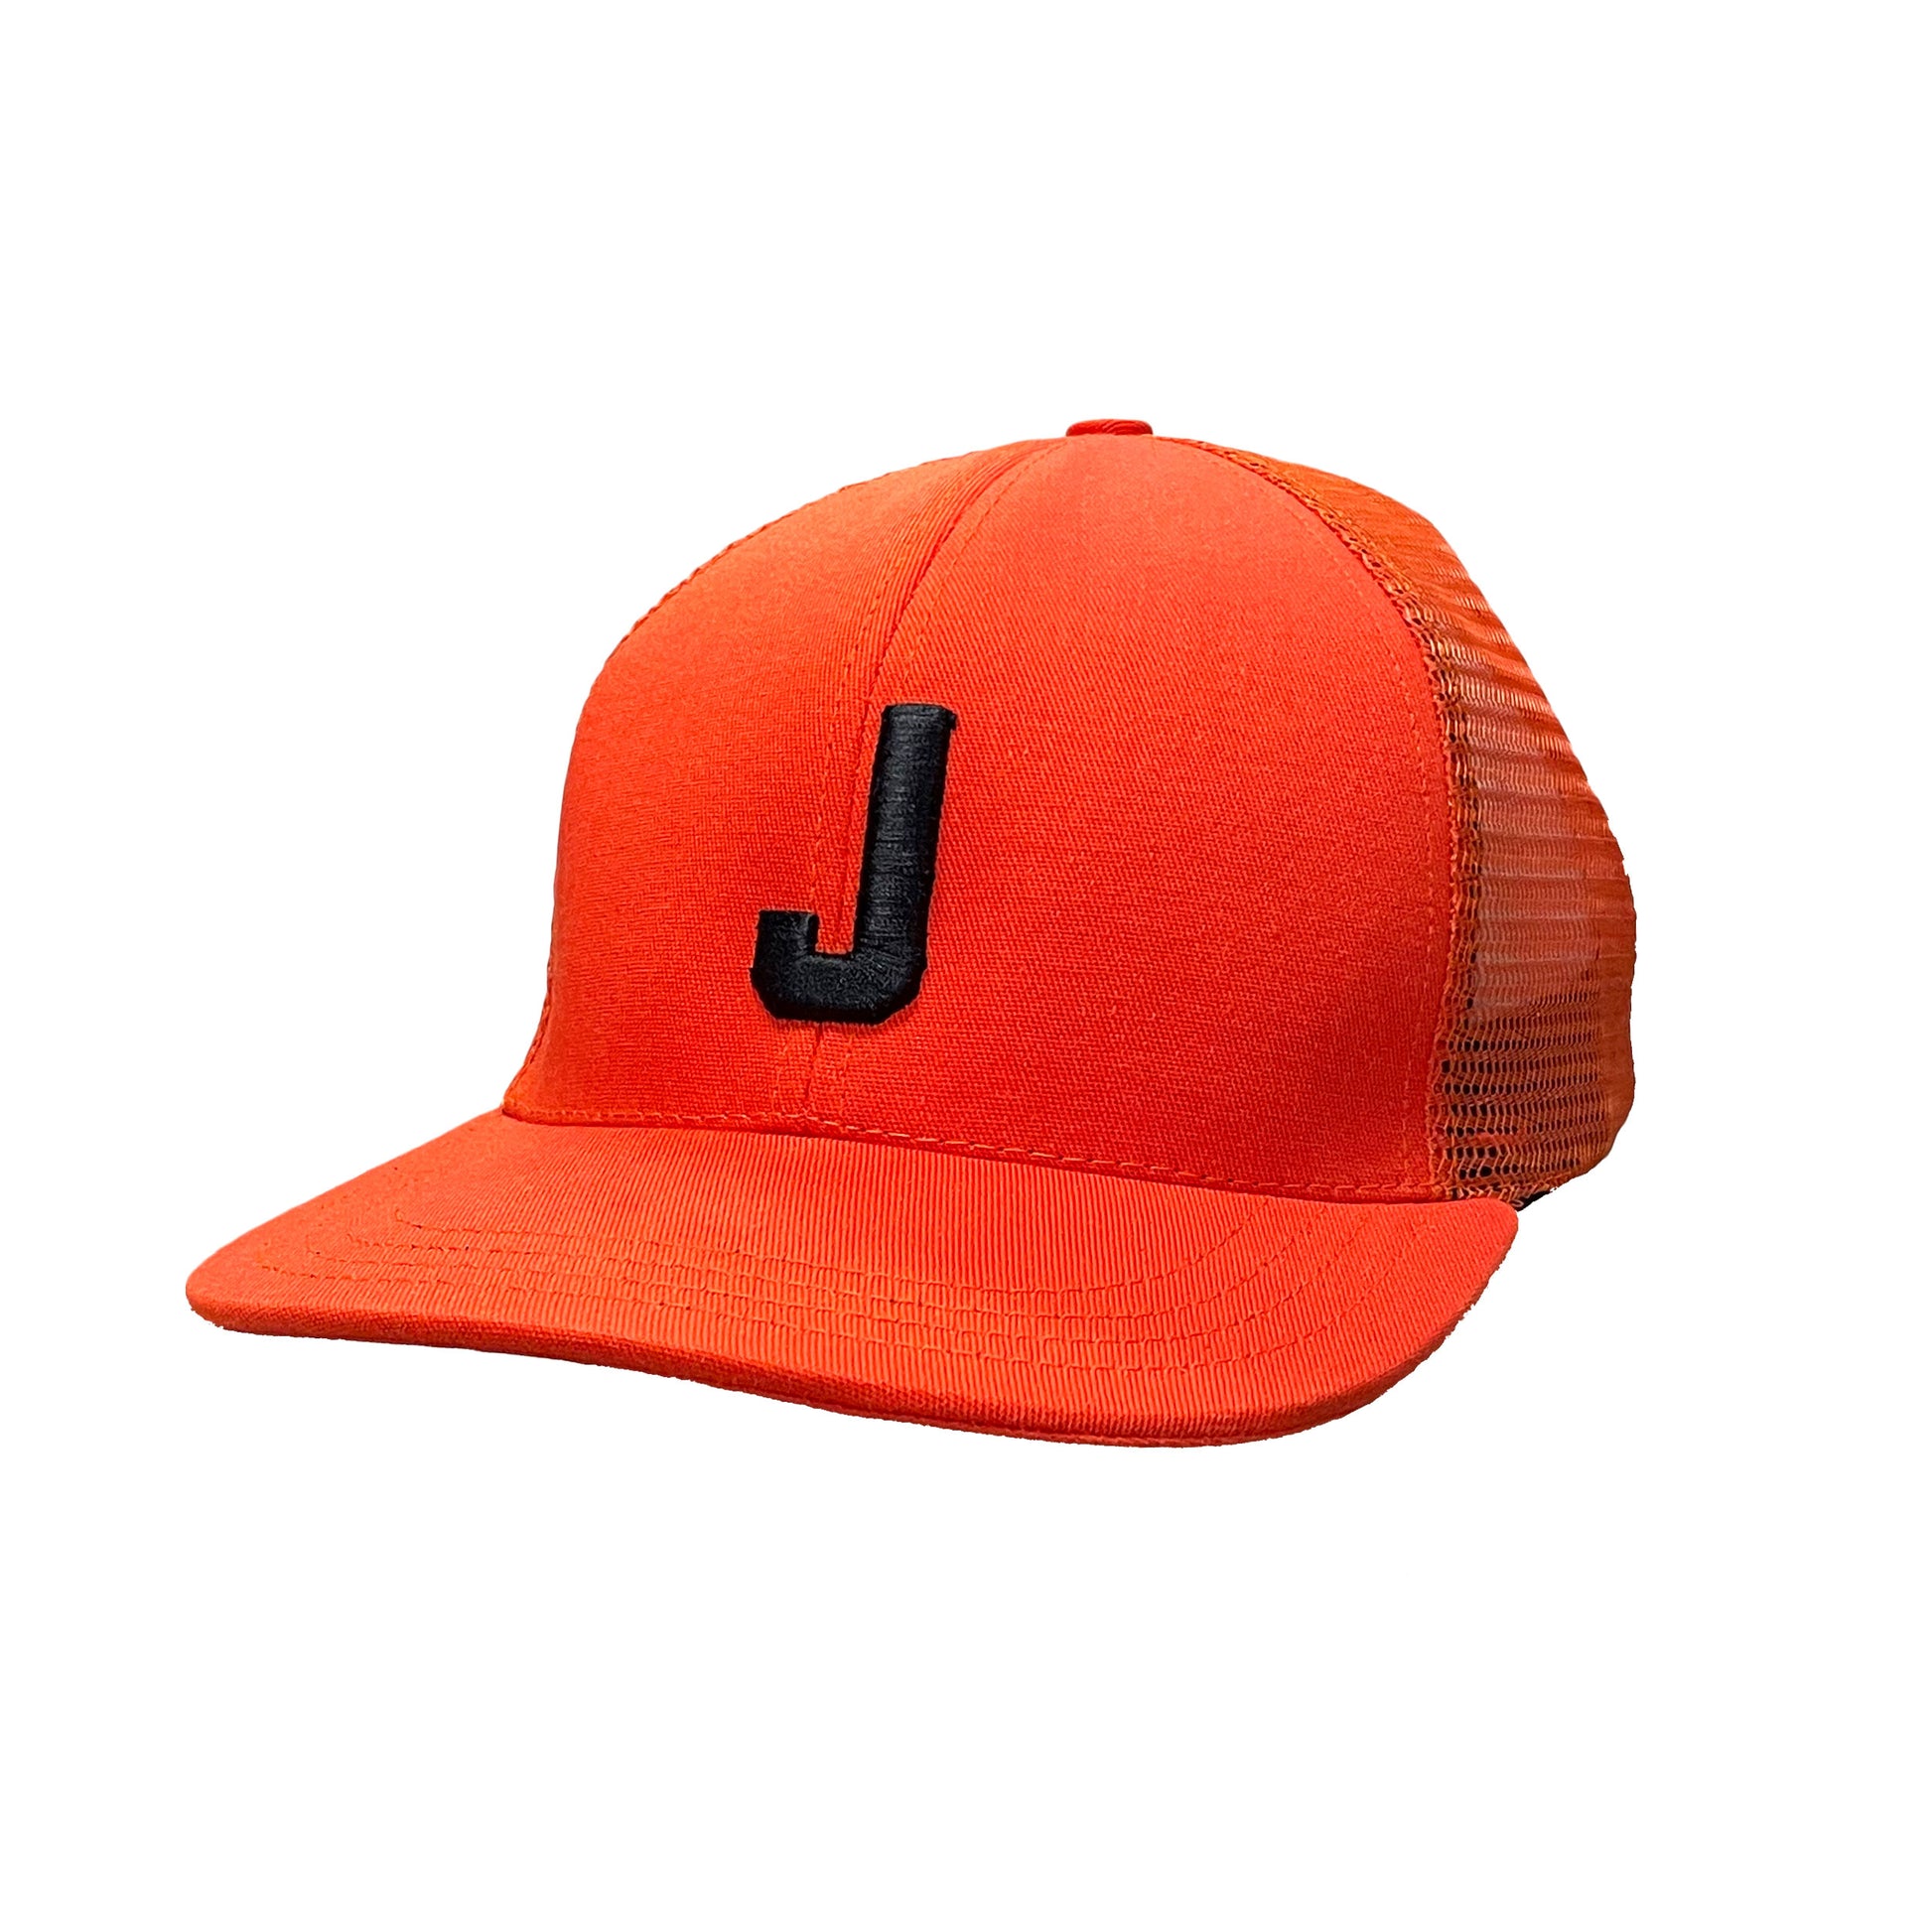 J Orange Trucker hat side view